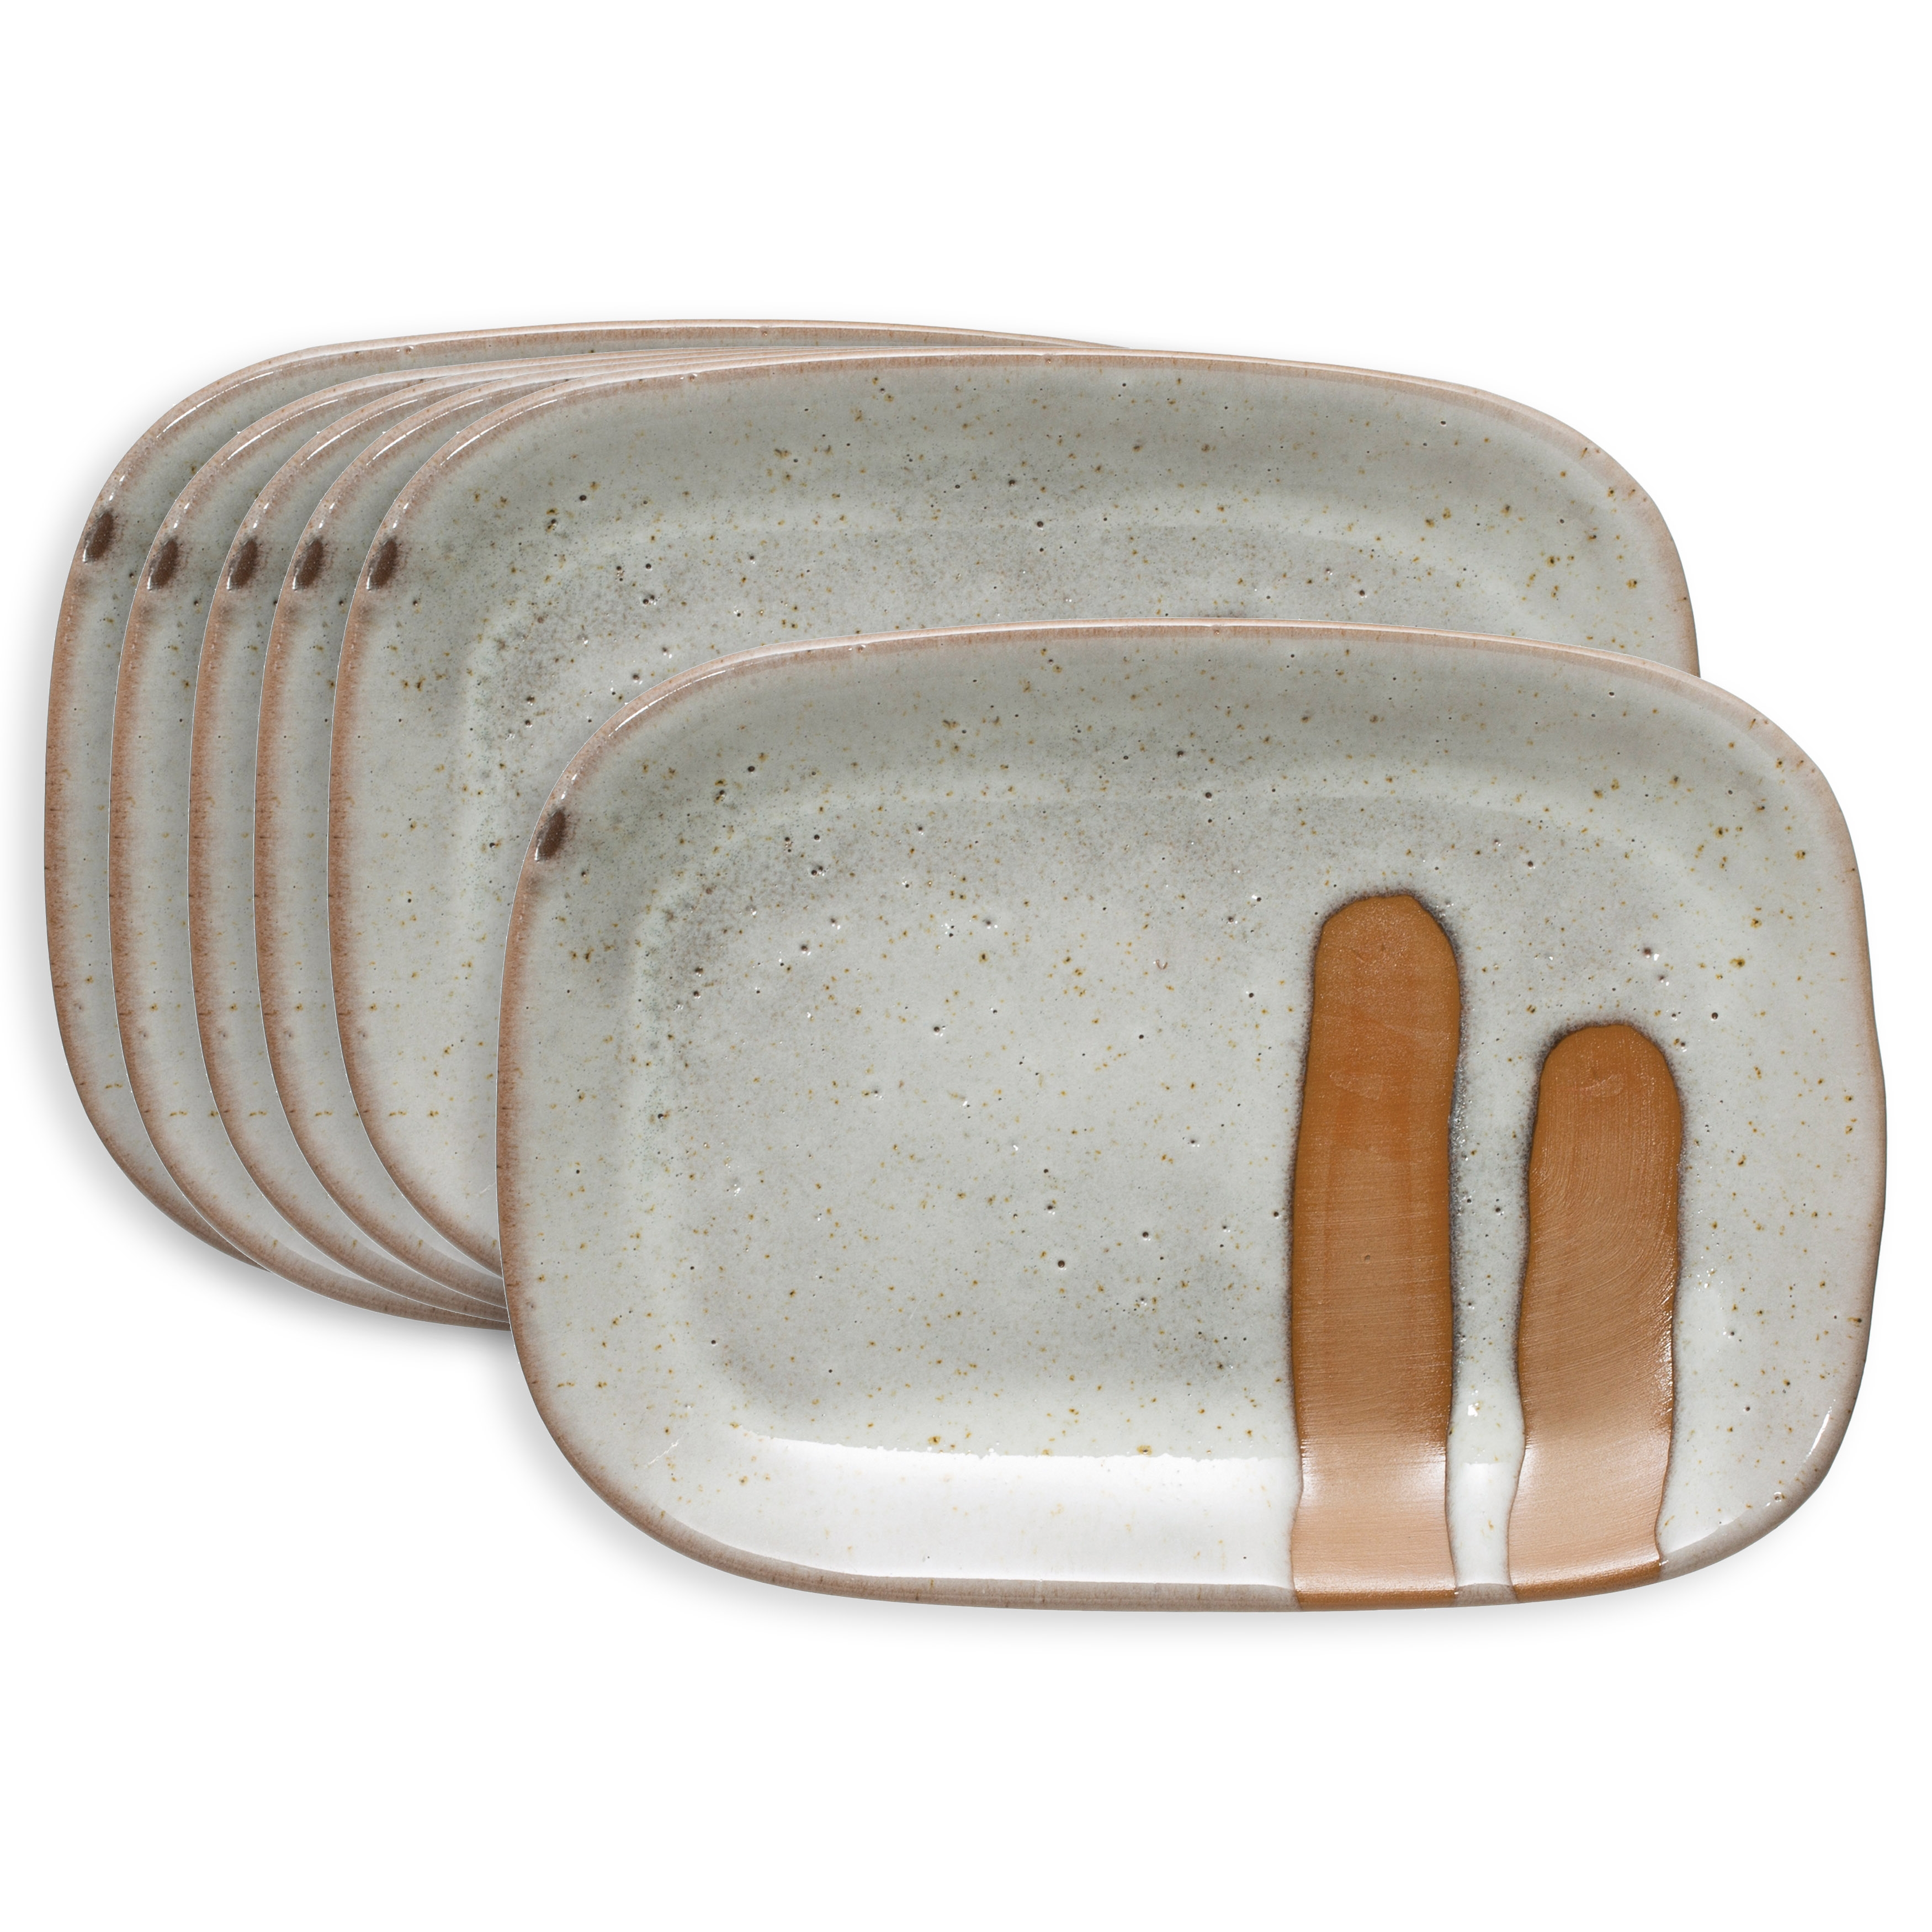 Southwest Inspired Reactive Glaze Stoneware Small Soap Dish Plates Neutral Beige and Orange, Set of 6 - Image 0